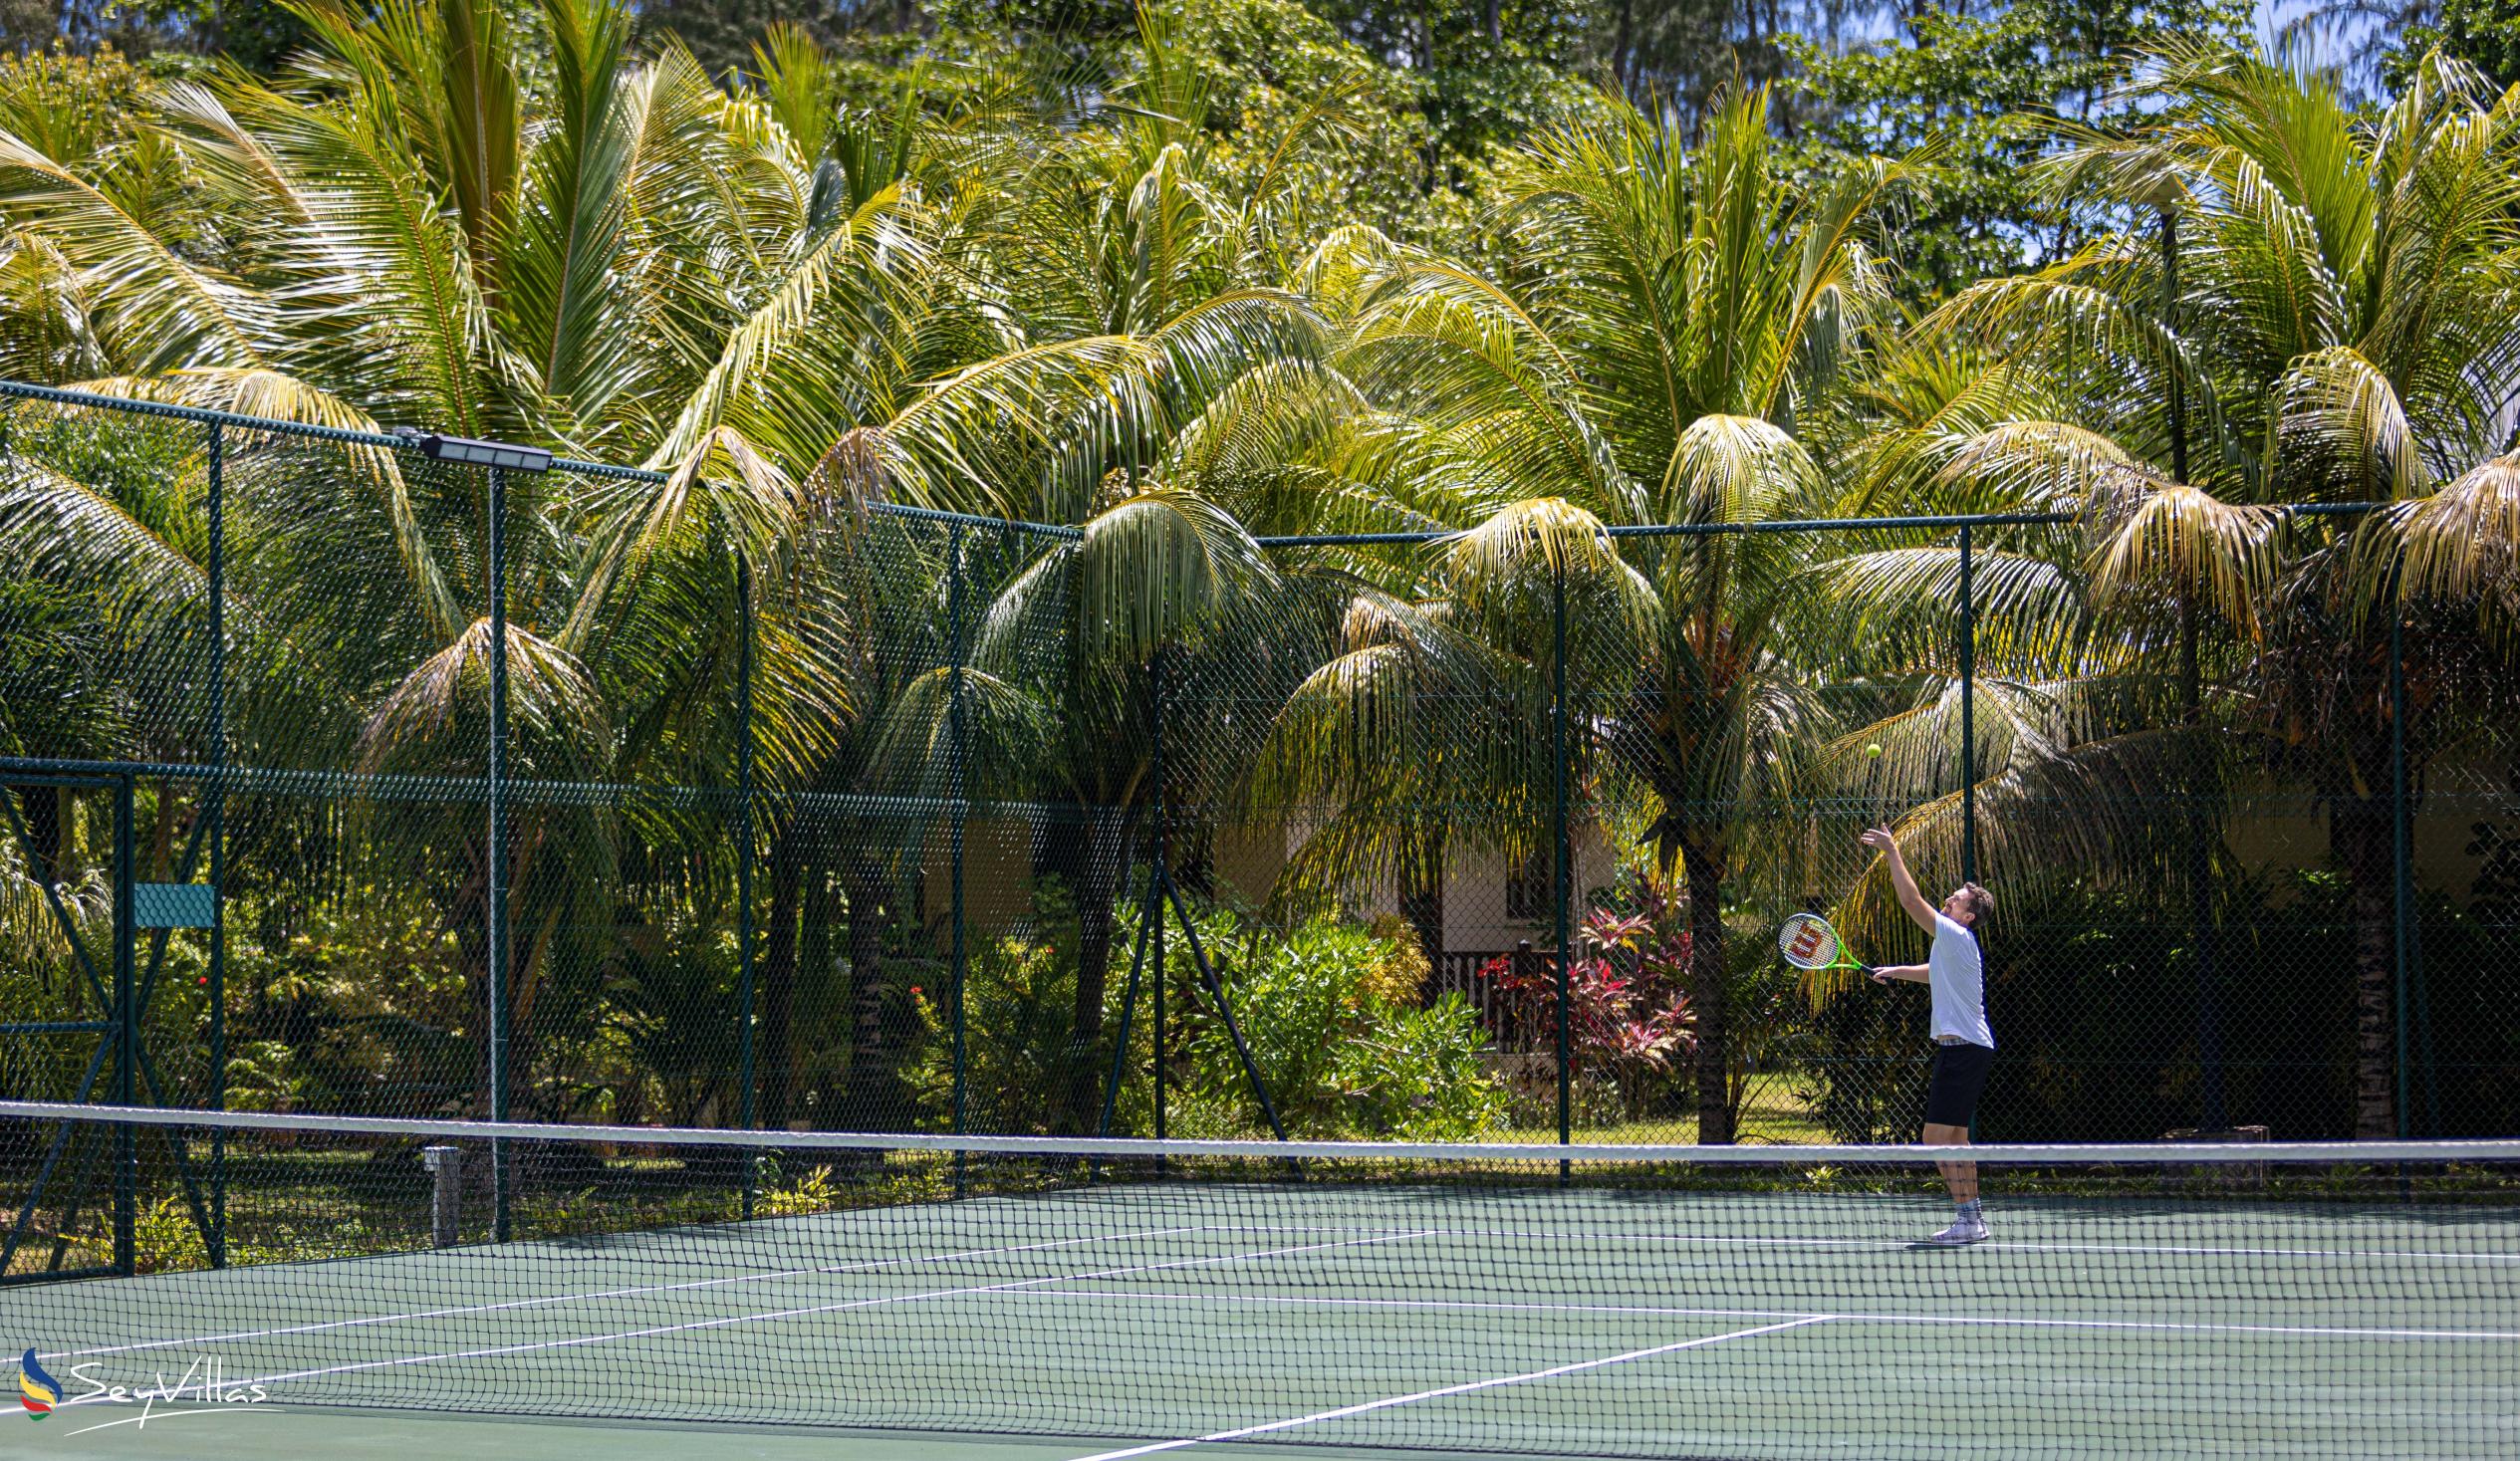 Photo 17: La Cigale Estate - Outdoor area - Praslin (Seychelles)